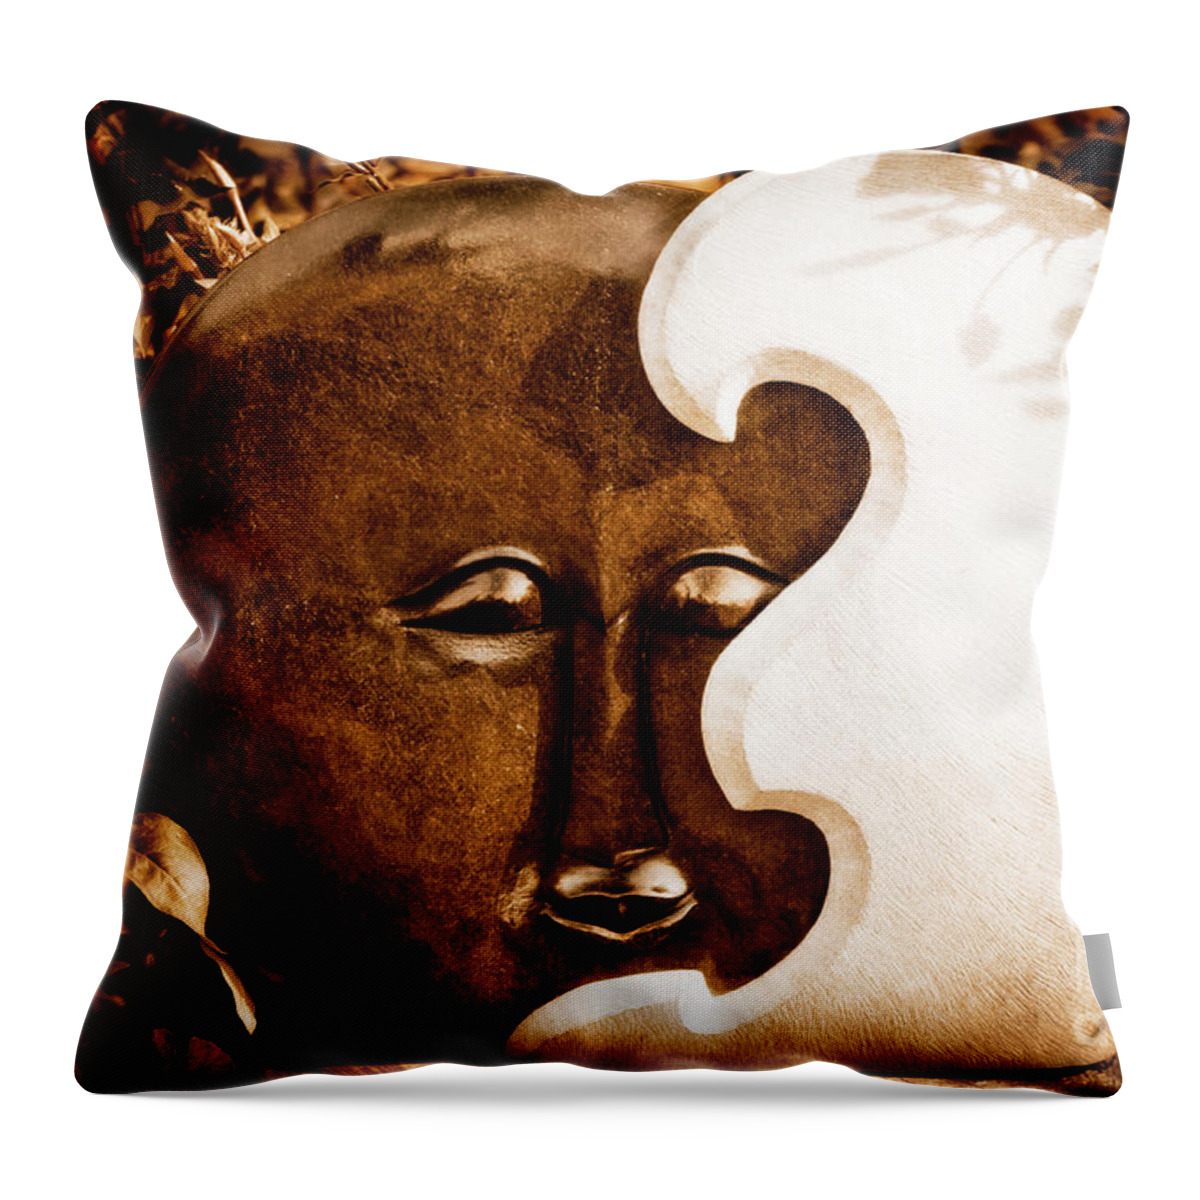 Art Throw Pillow featuring the photograph Emerging Sun by Venetta Archer